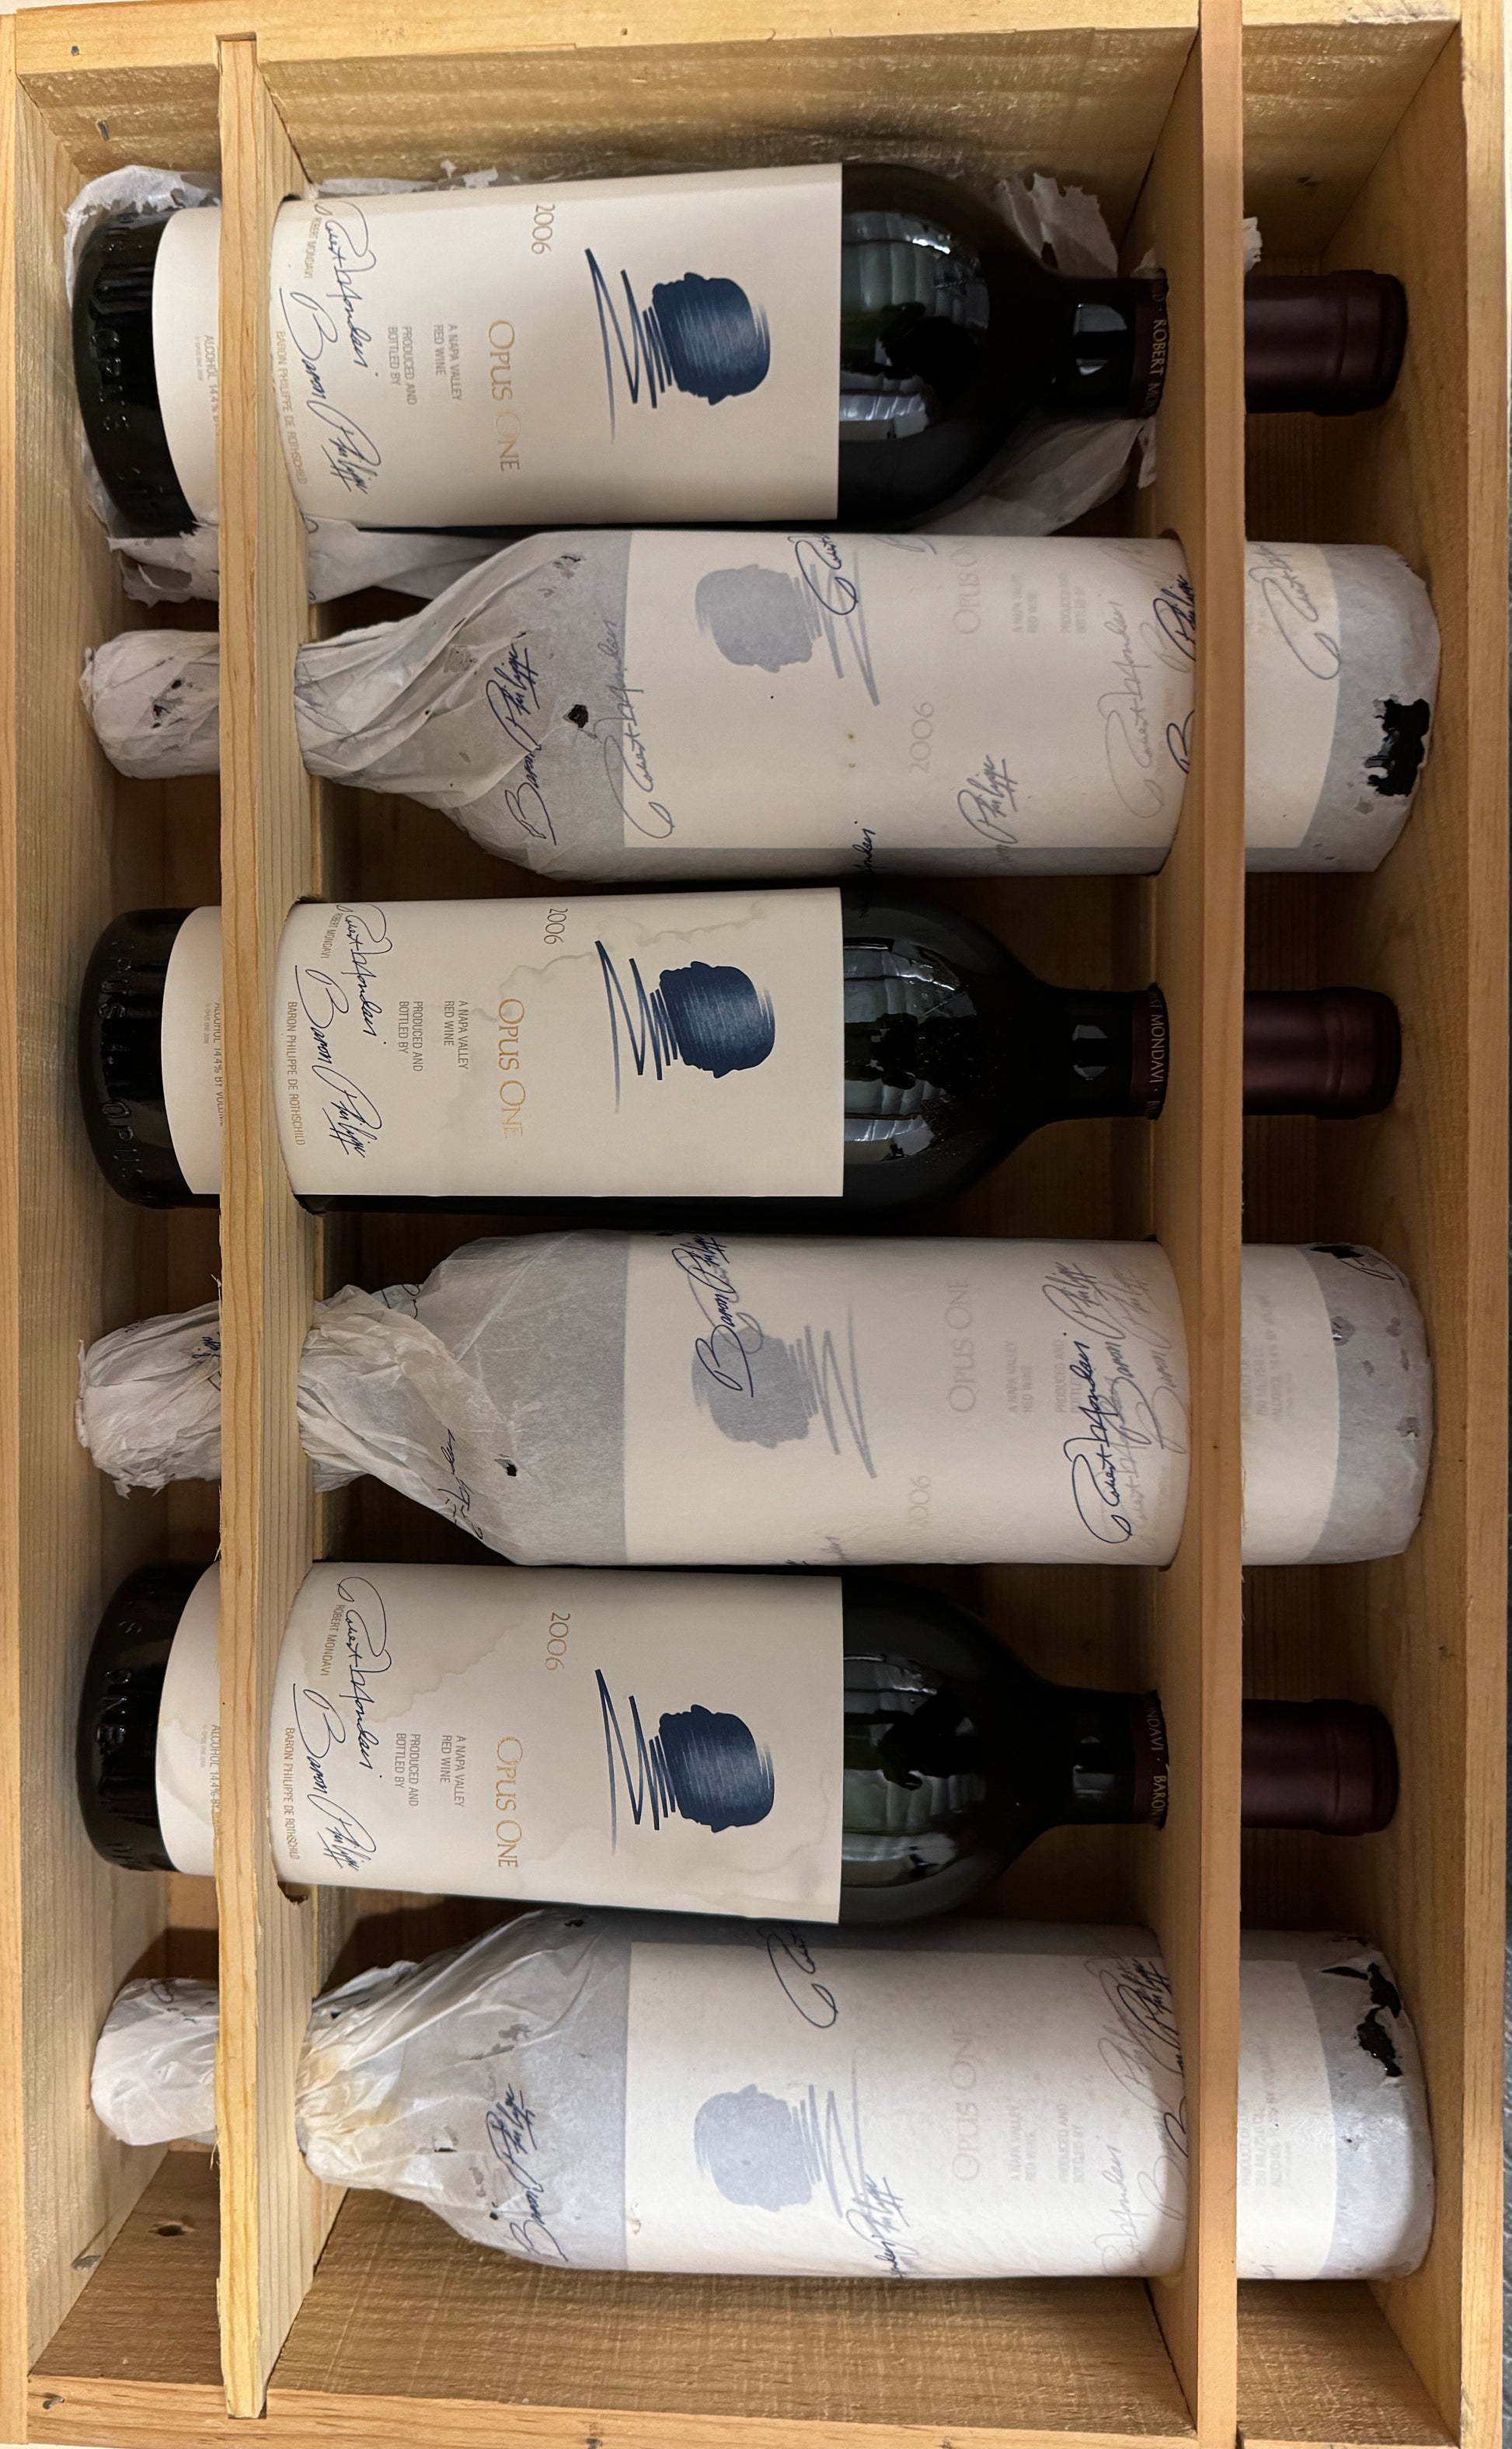 2006 Opus One, Napa Valley 750ml - Walker Wine Co.